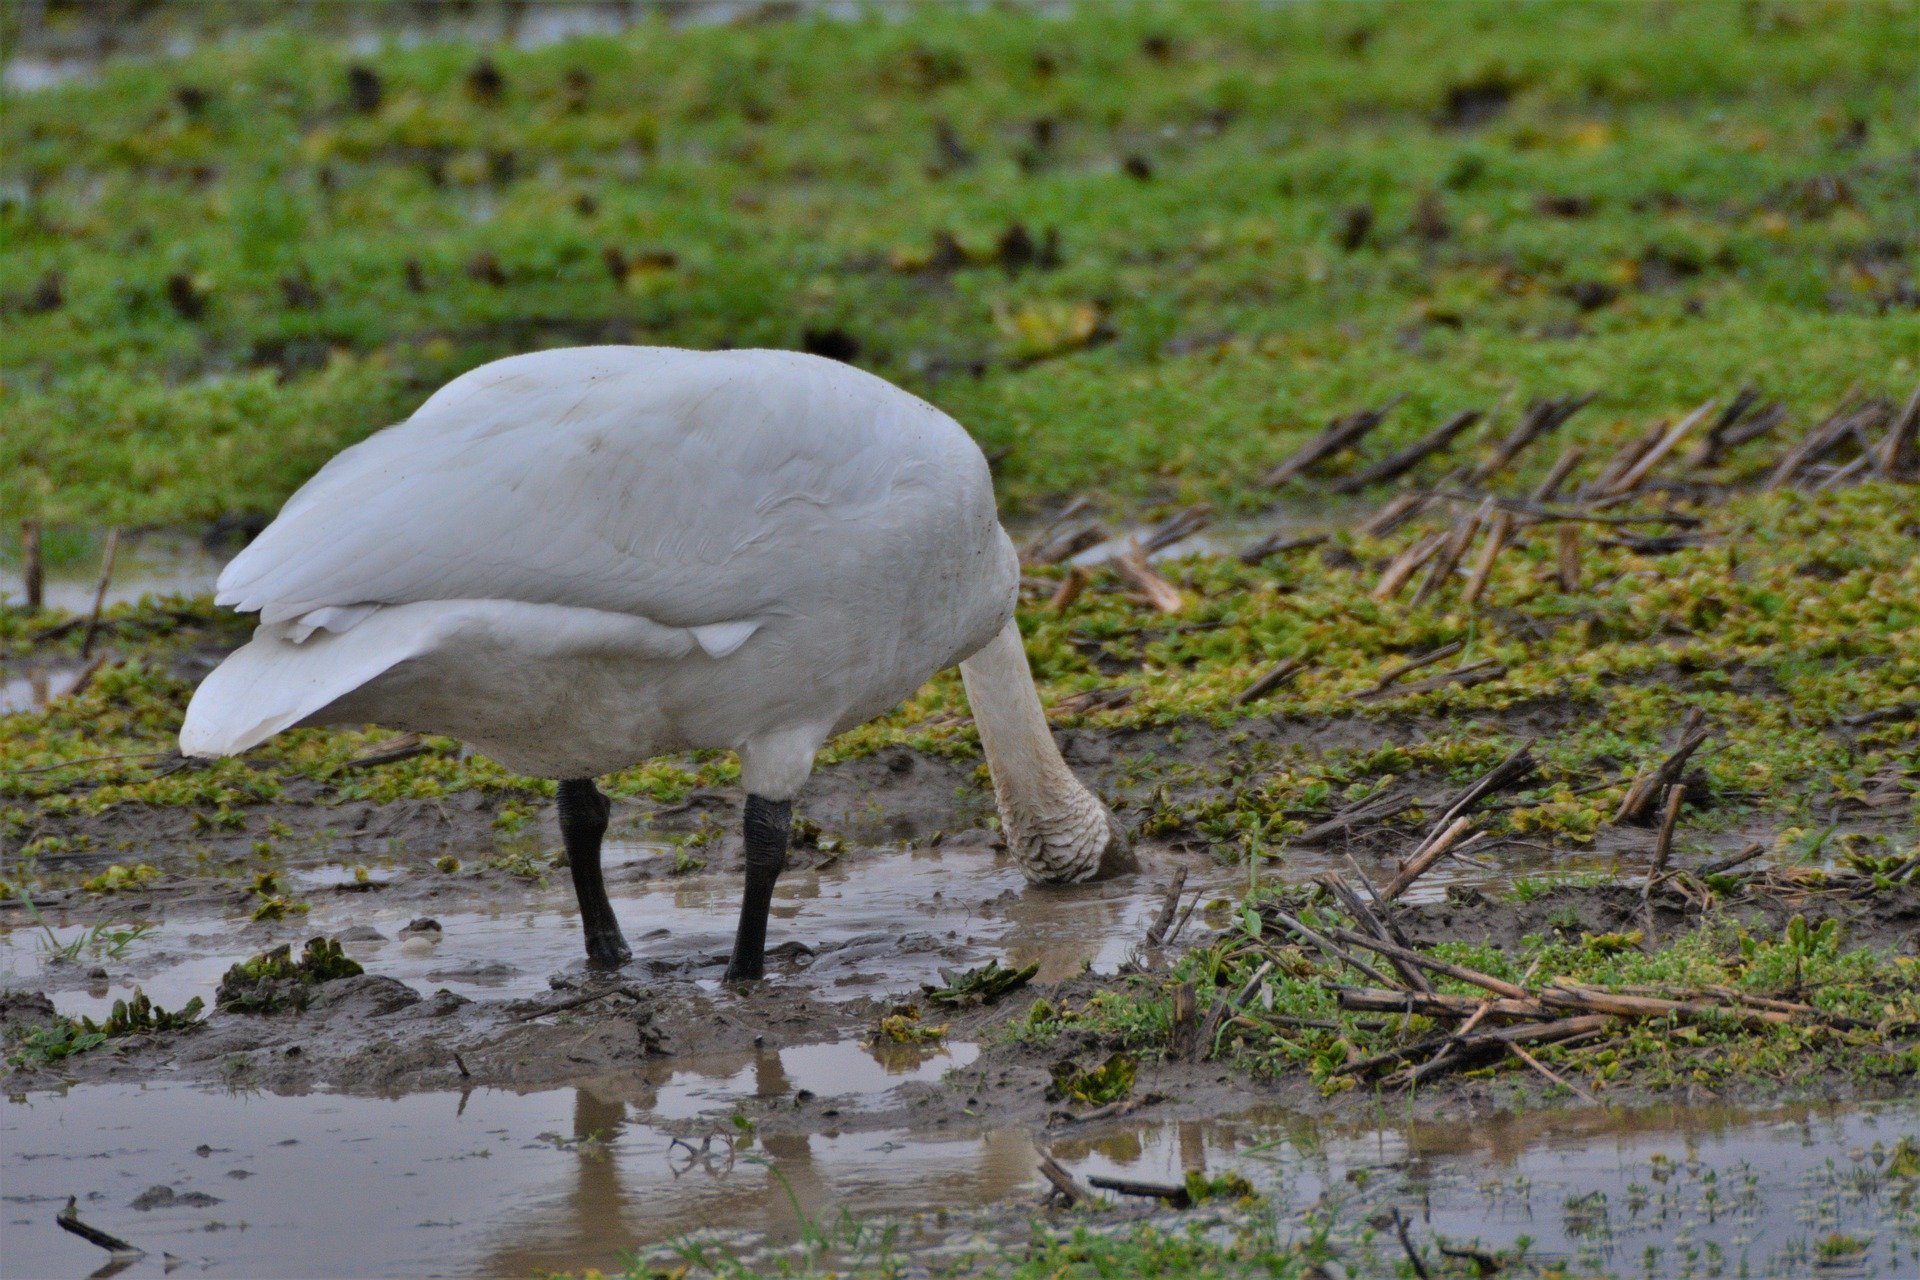 Trumpeter swan feeding in wet field.